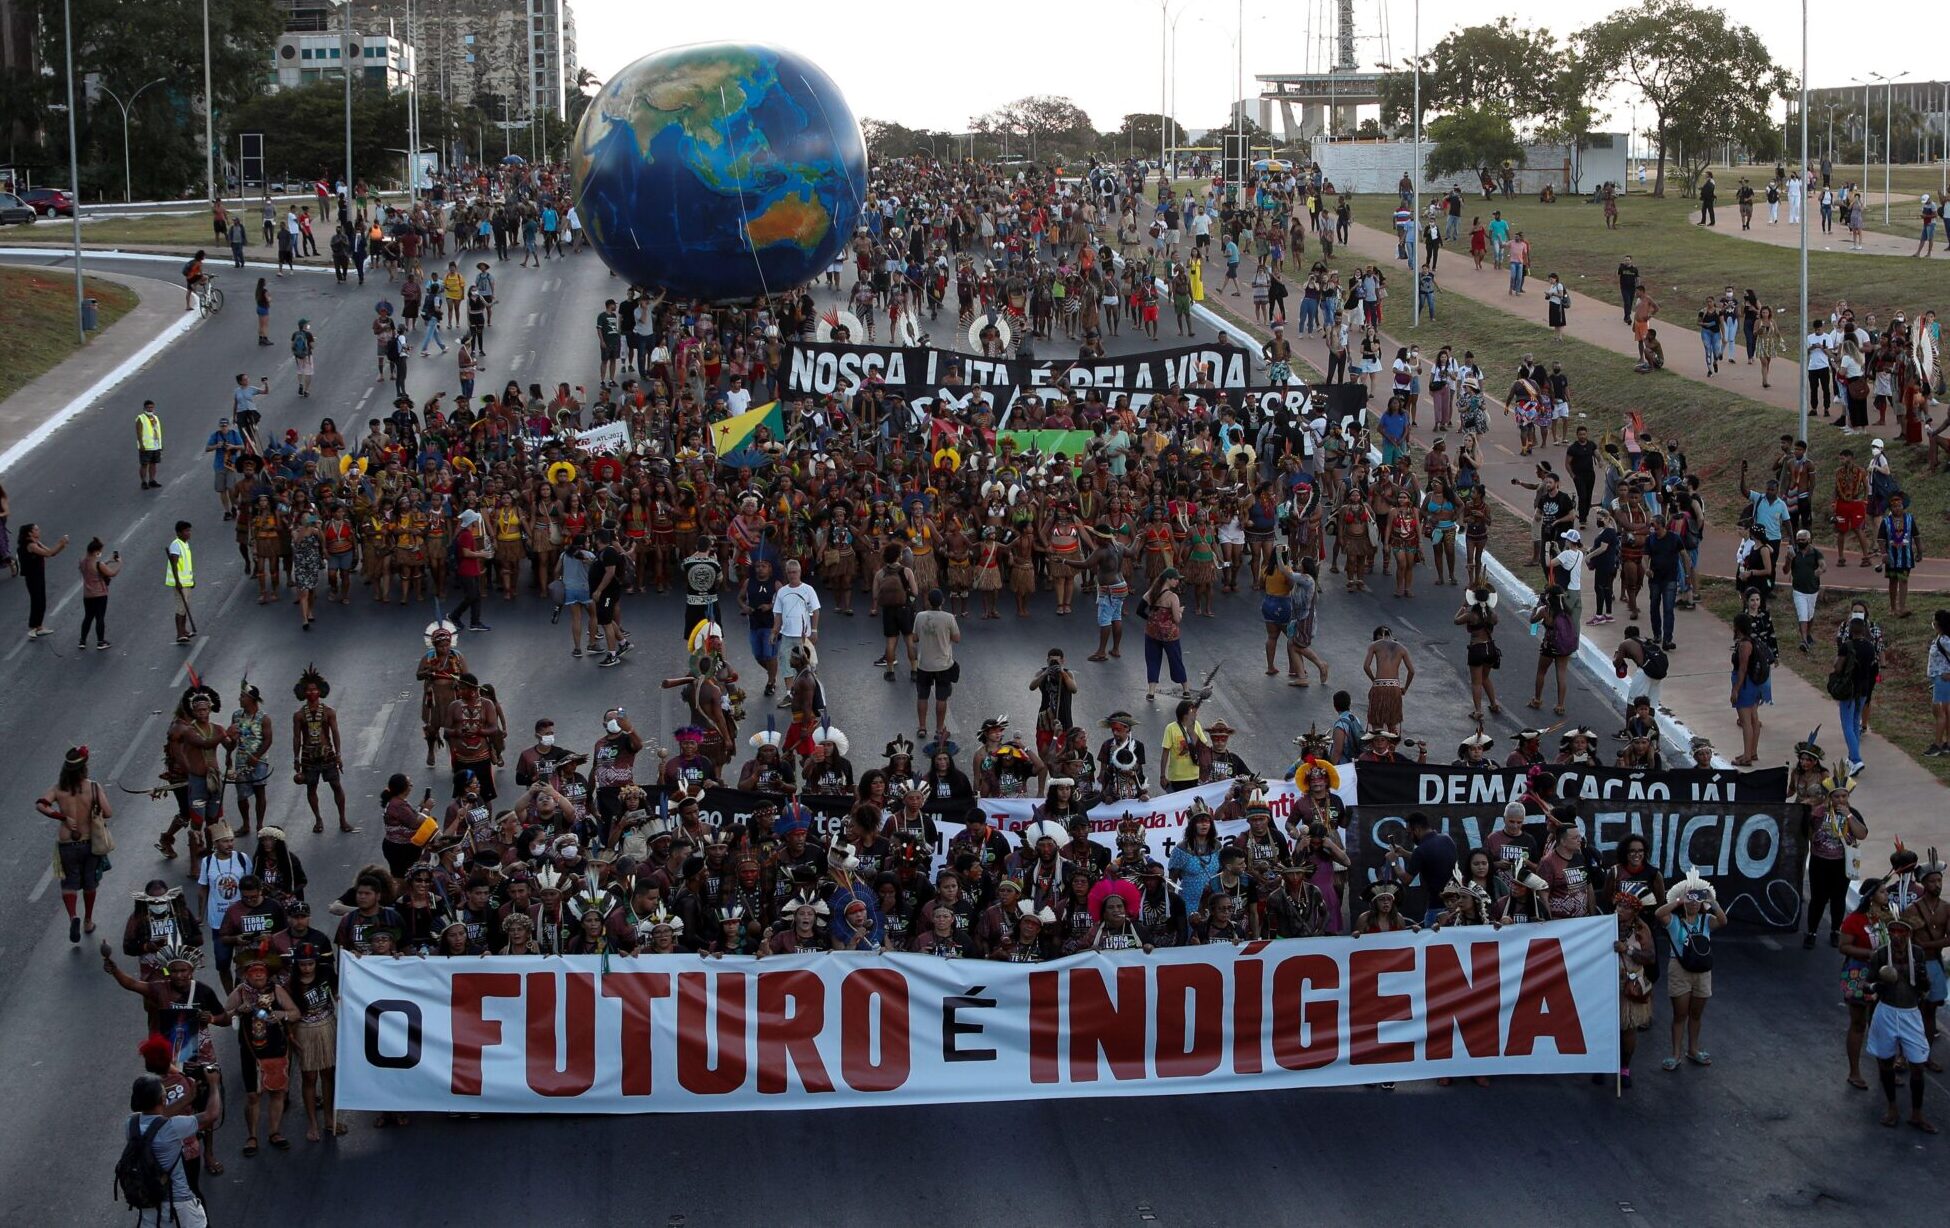 protesto indígena no Brasil